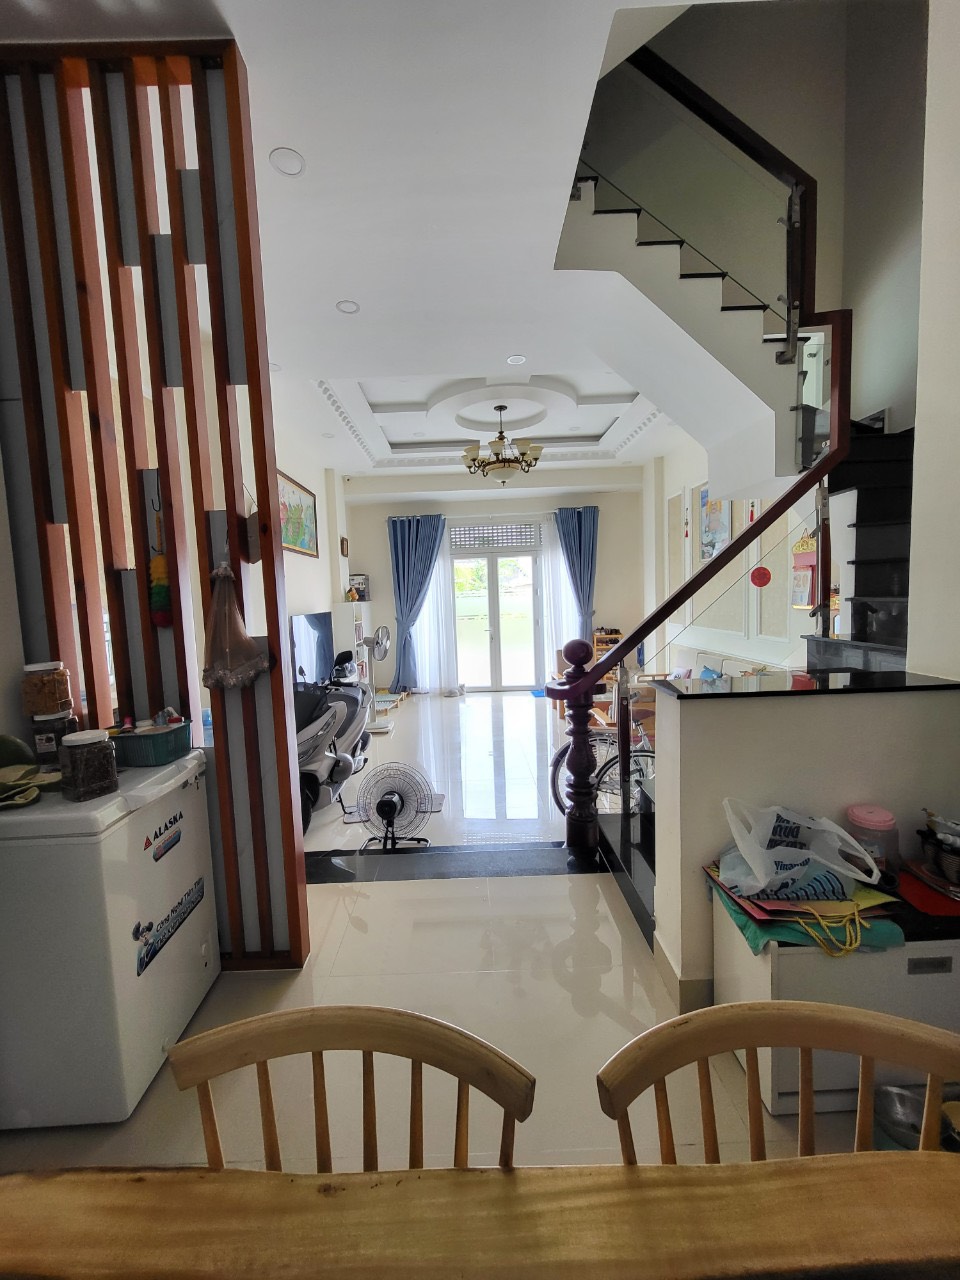 Bán nhà thông số chuẩn Lê Quang Định - Nhà mới nhất khu vực - Xe 7 chỗ đỗ tại nhà - Thiện chí bán.